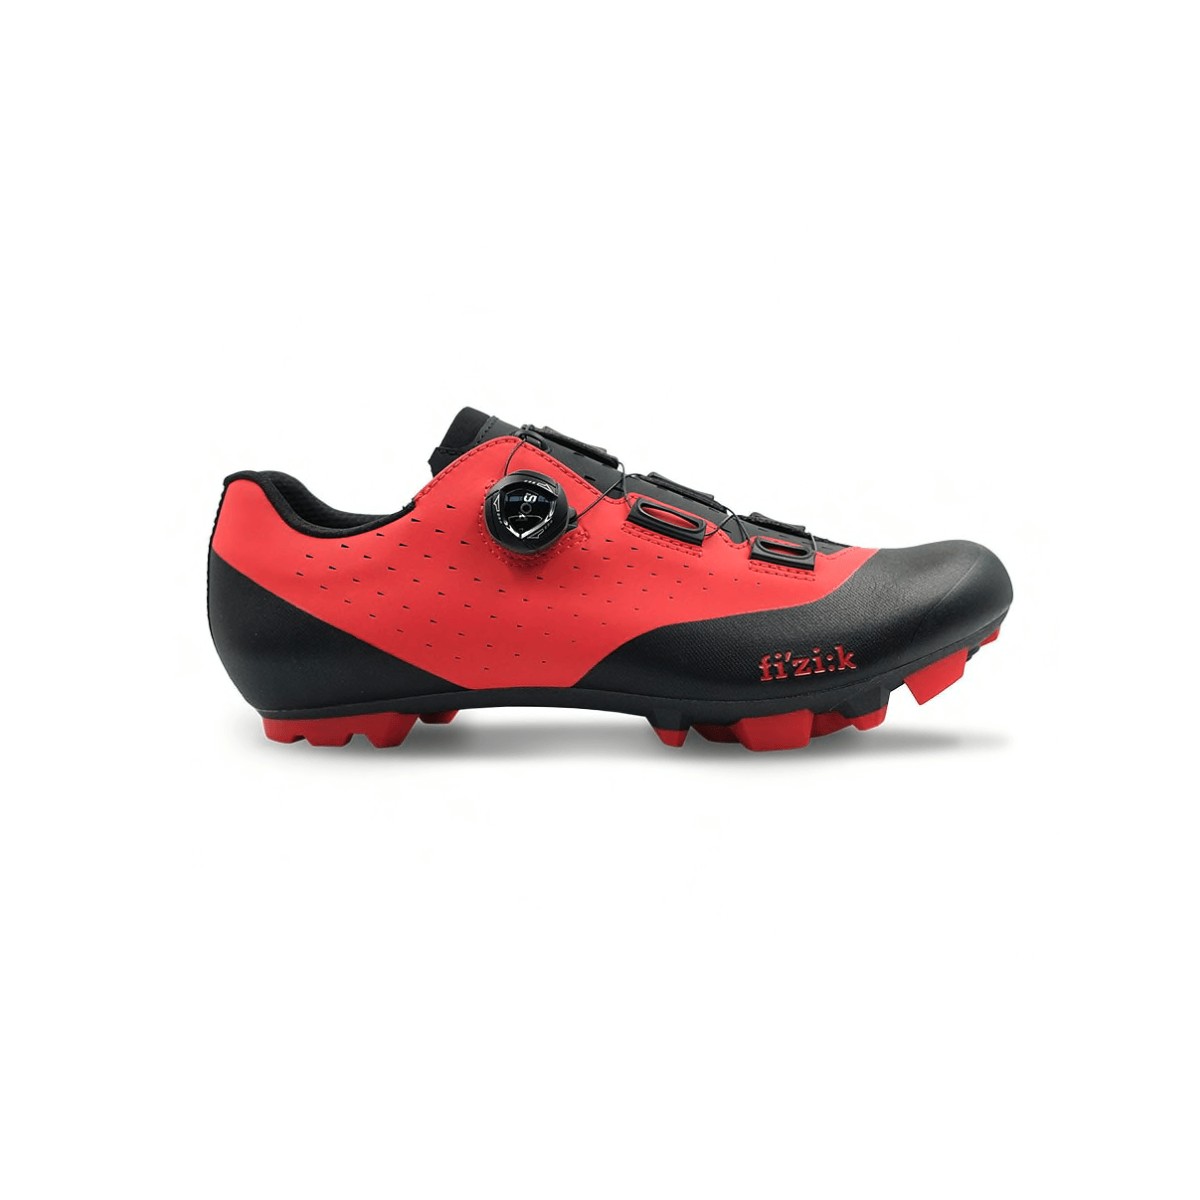 Chaussures Fizik Vento X3 Overcurve Rouge Noir, Taille 42 - EUR